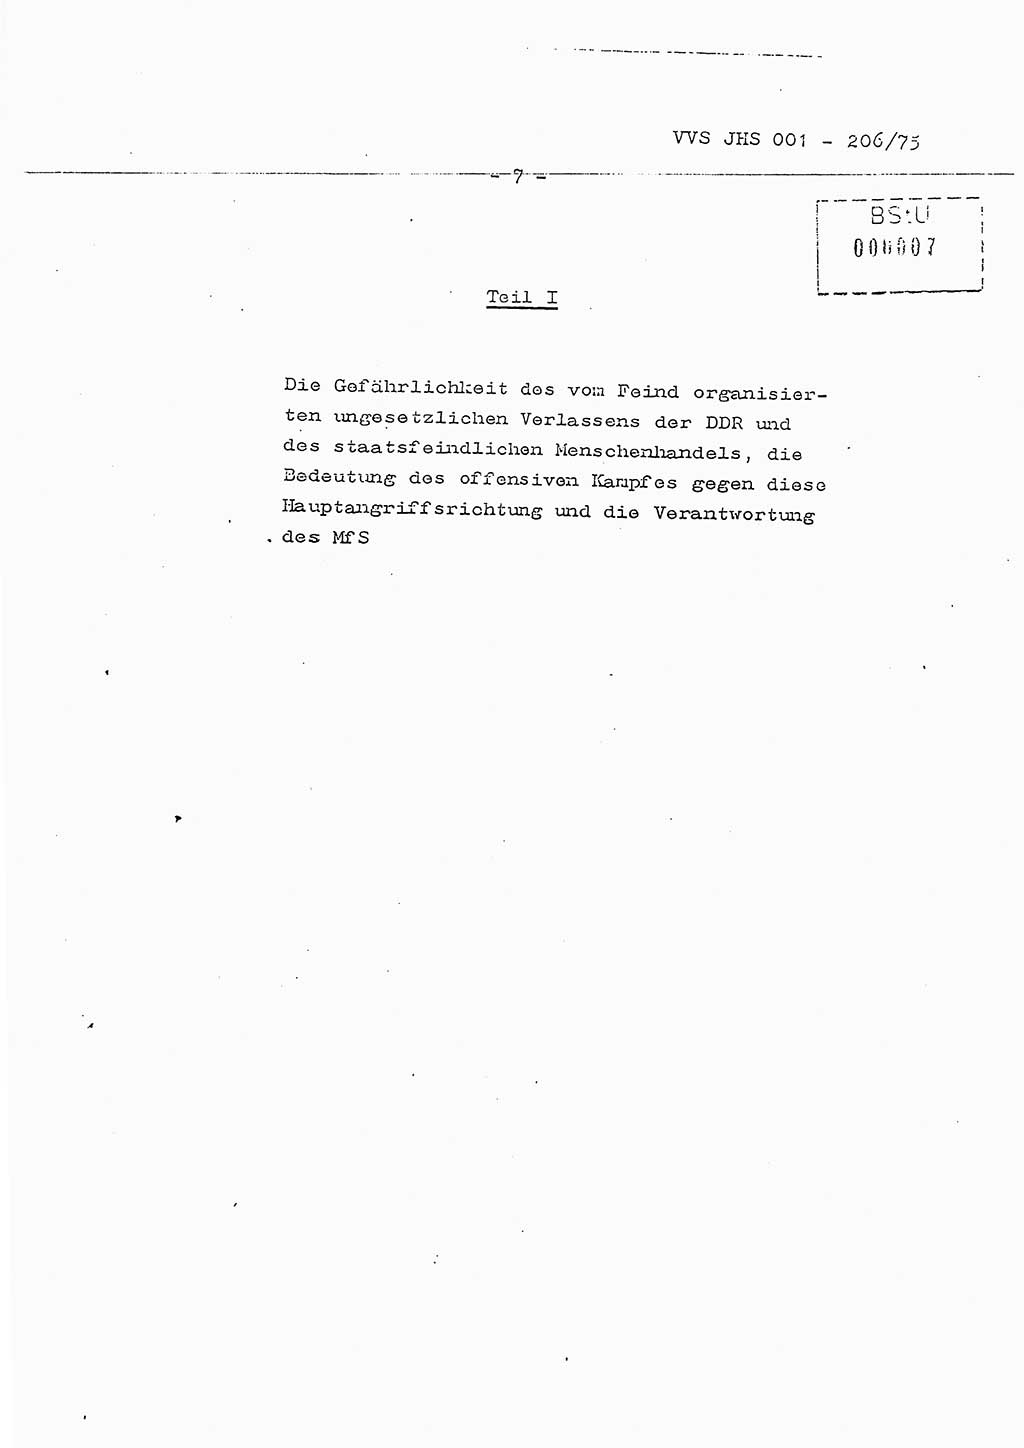 Dissertation Generalmajor Manfred Hummitzsch (Leiter der BV Leipzig), Generalmajor Heinz Fiedler (HA Ⅵ), Oberst Rolf Fister (HA Ⅸ), Ministerium für Staatssicherheit (MfS) [Deutsche Demokratische Republik (DDR)], Juristische Hochschule (JHS), Vertrauliche Verschlußsache (VVS) 001-206/75, Potsdam 1975, Seite 7 (Diss. MfS DDR JHS VVS 001-206/75 1975, S. 7)